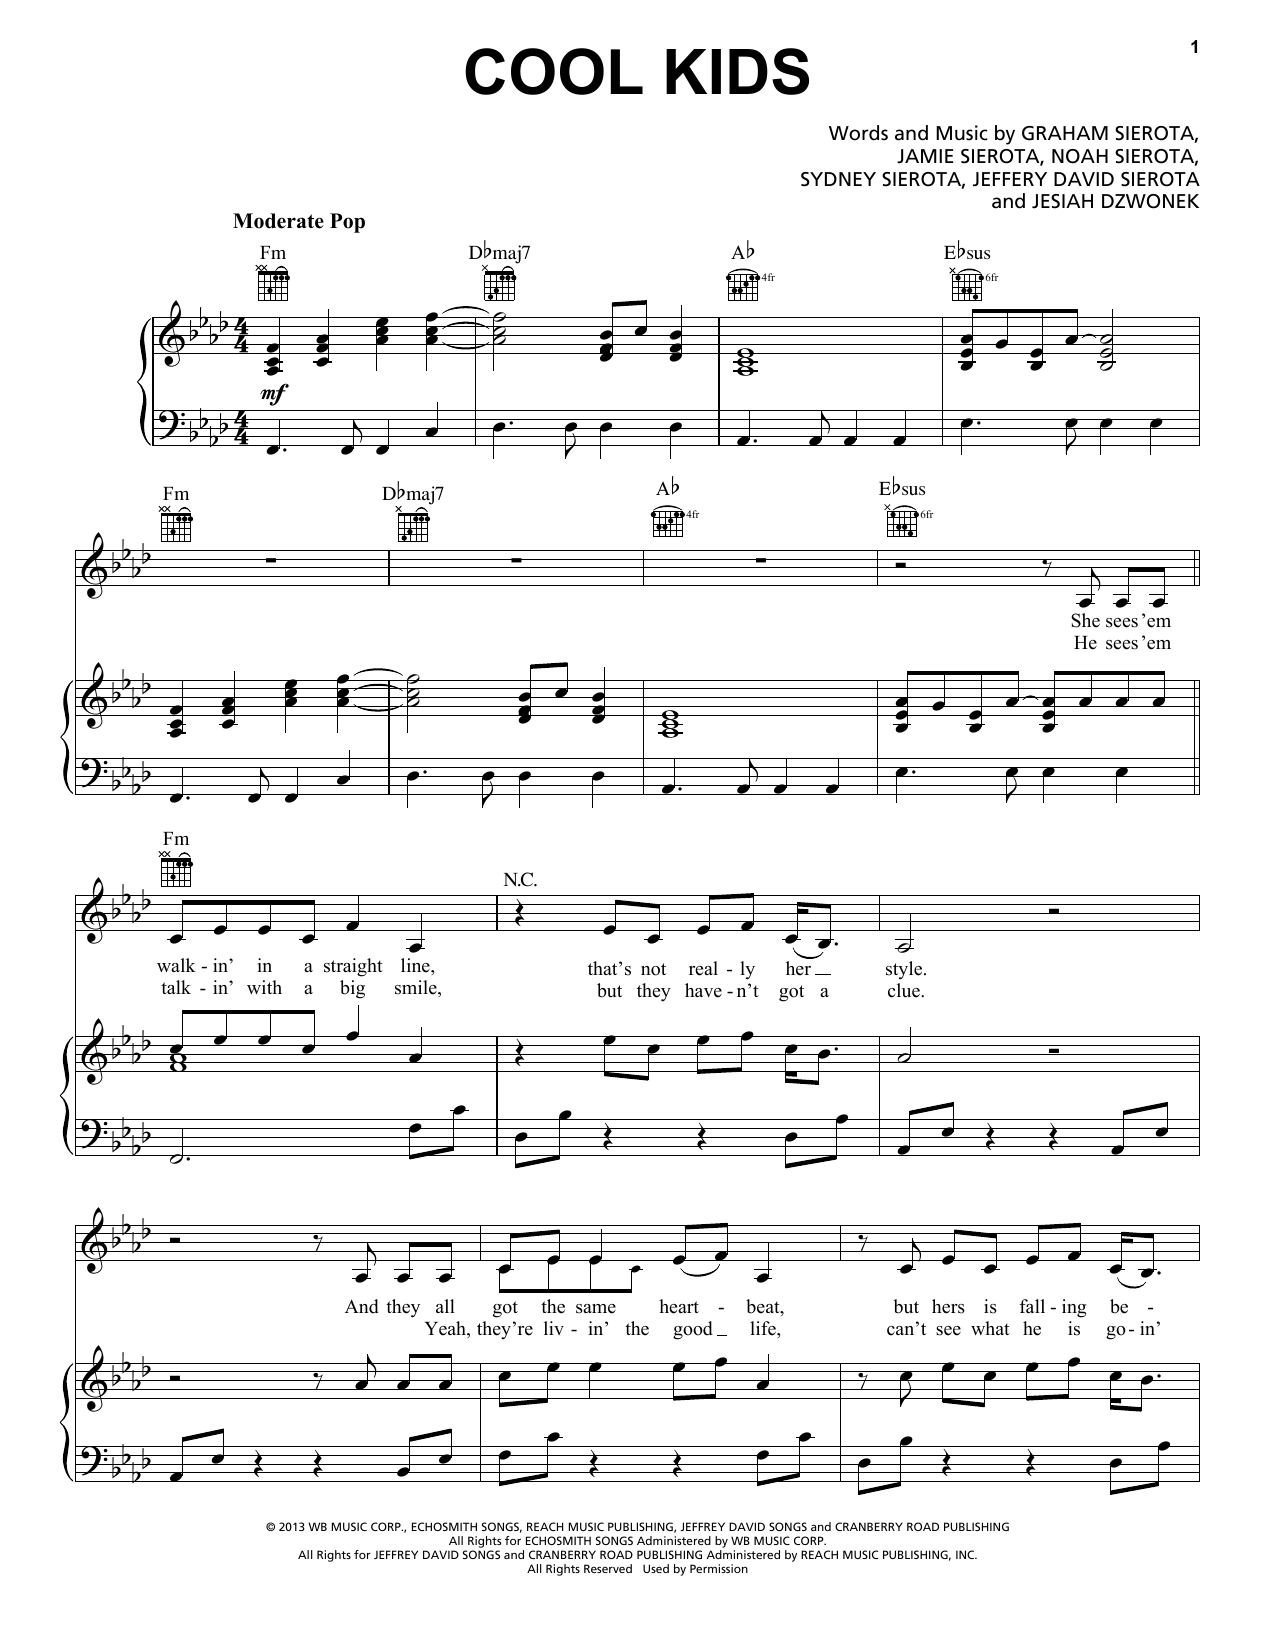 Echosmith Cool Kids Sheet Music Notes & Chords for Lyrics & Chords - Download or Print PDF